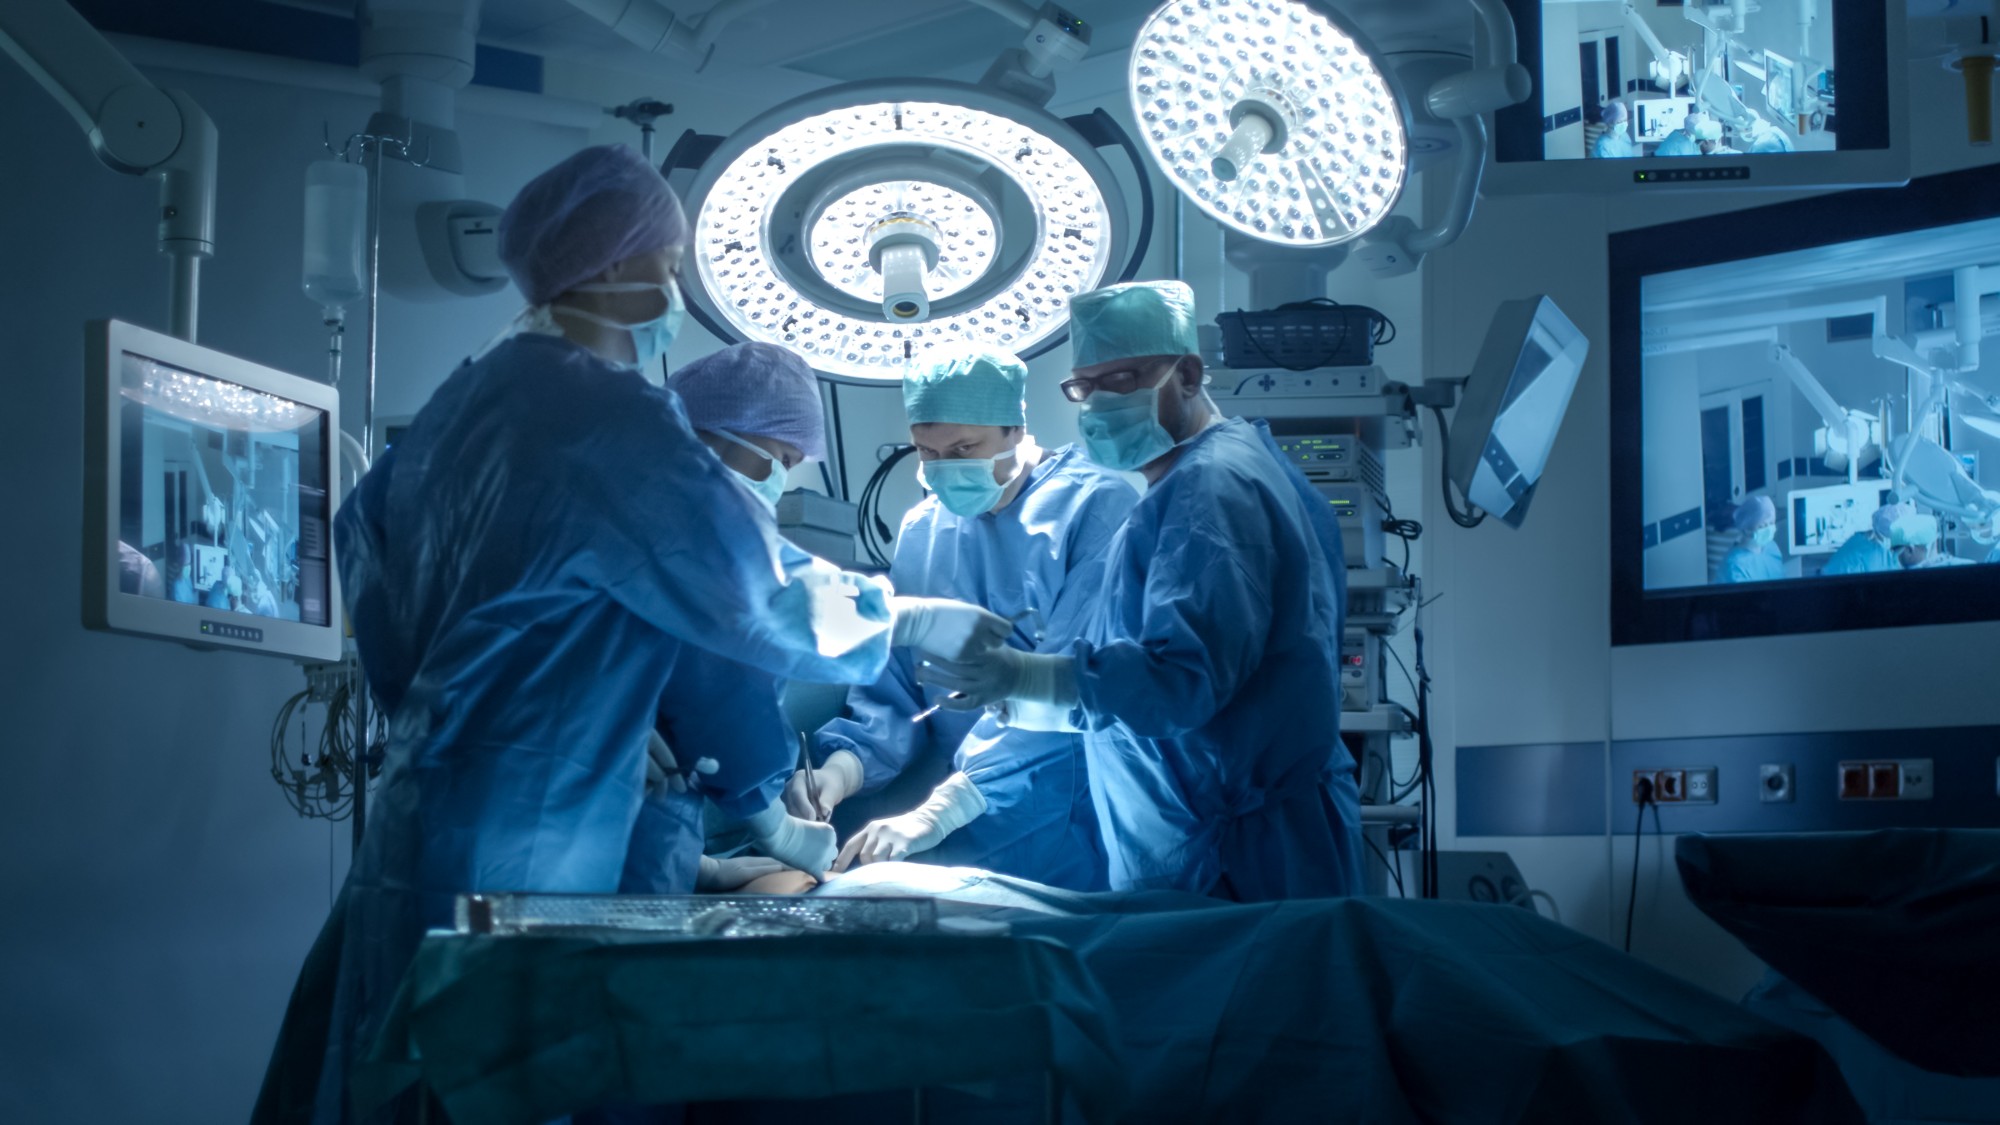 Centros cirúrgicos utilizam, em média, 38% de sua capacidade operacional